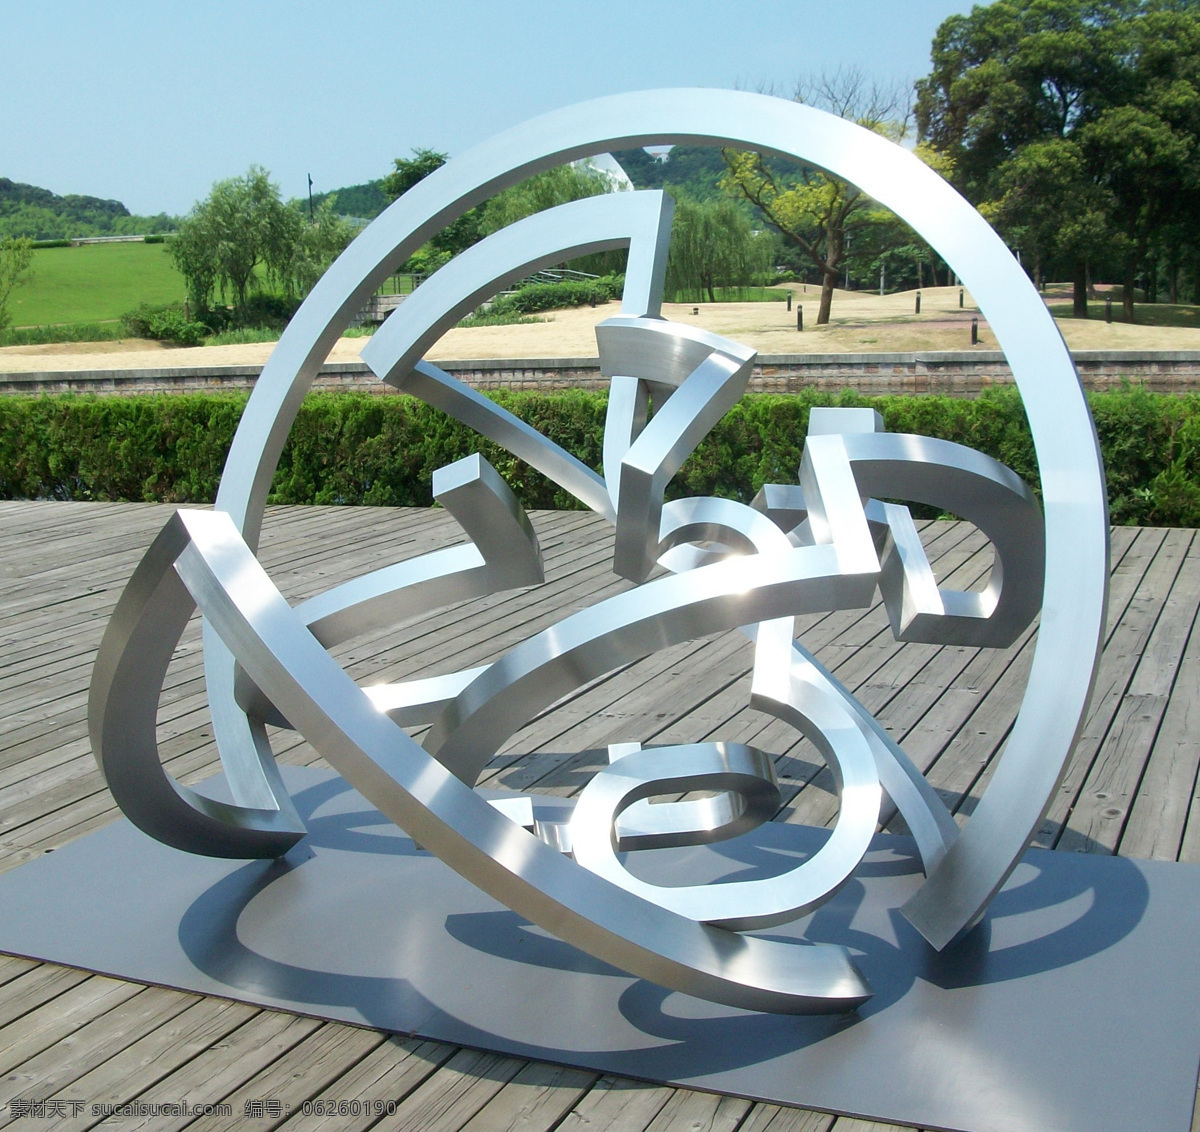 钢结构雕塑 不锈钢雕塑 抽象雕塑 上海 月湖公园 雕塑 建筑园林